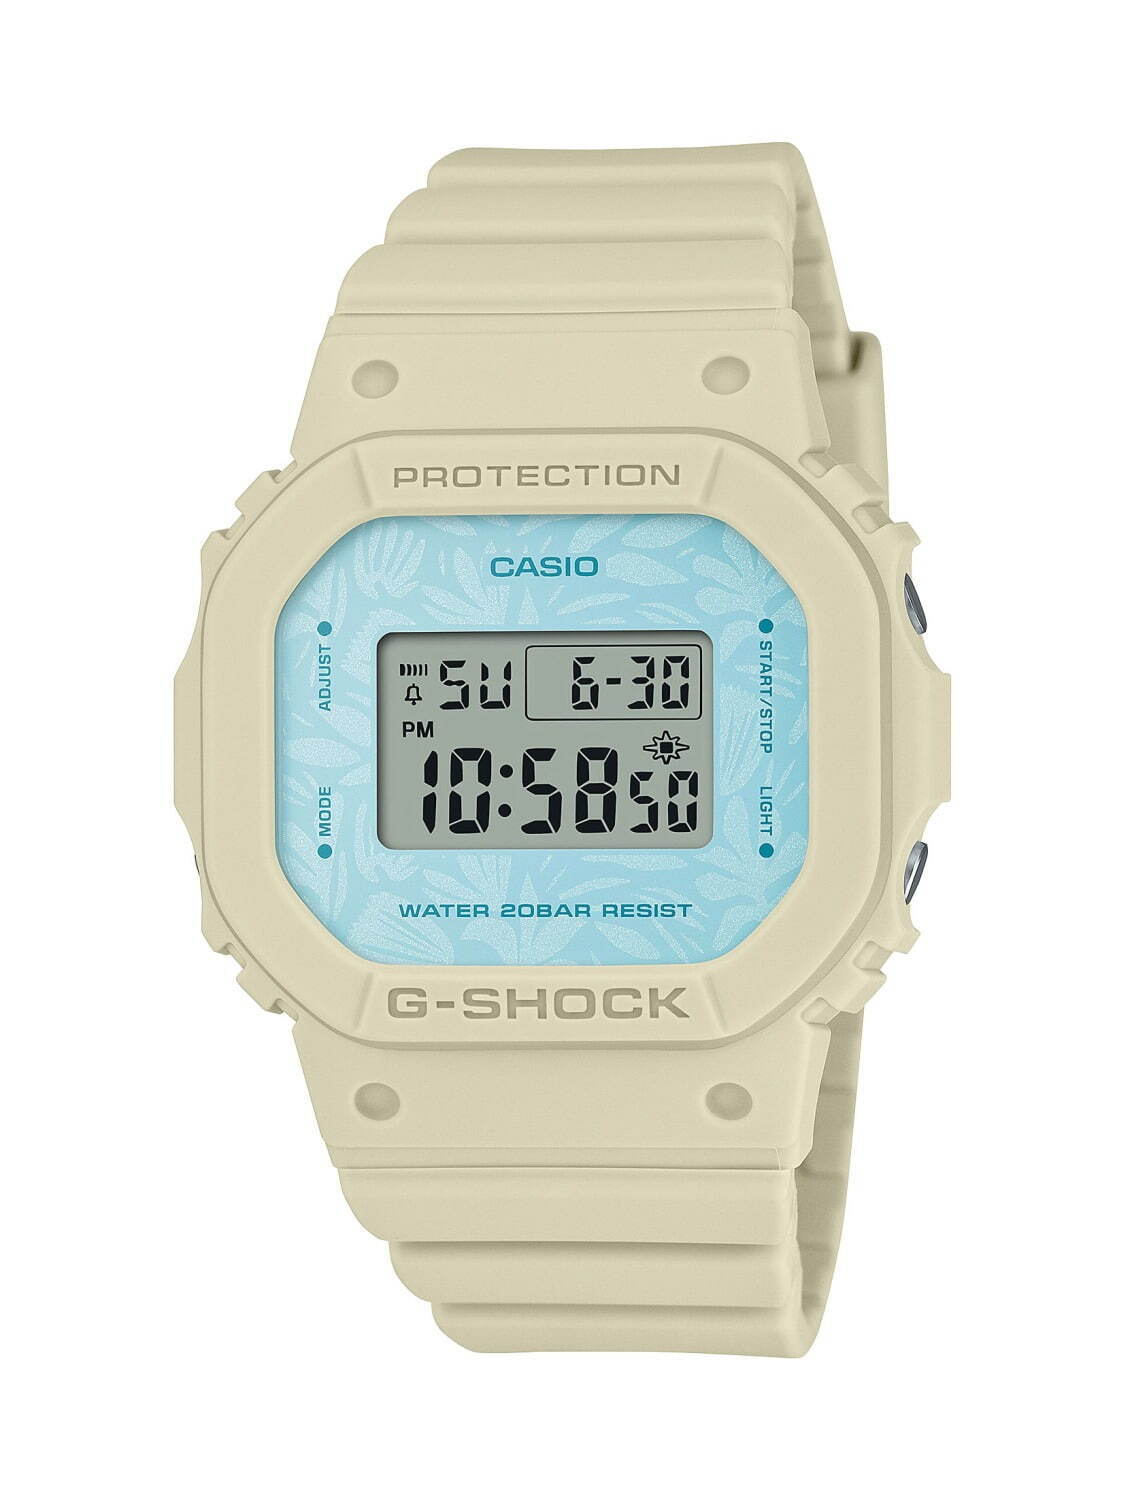 G-SHOCKから自然に着想を得た新作腕時計、ナチュラルカラー